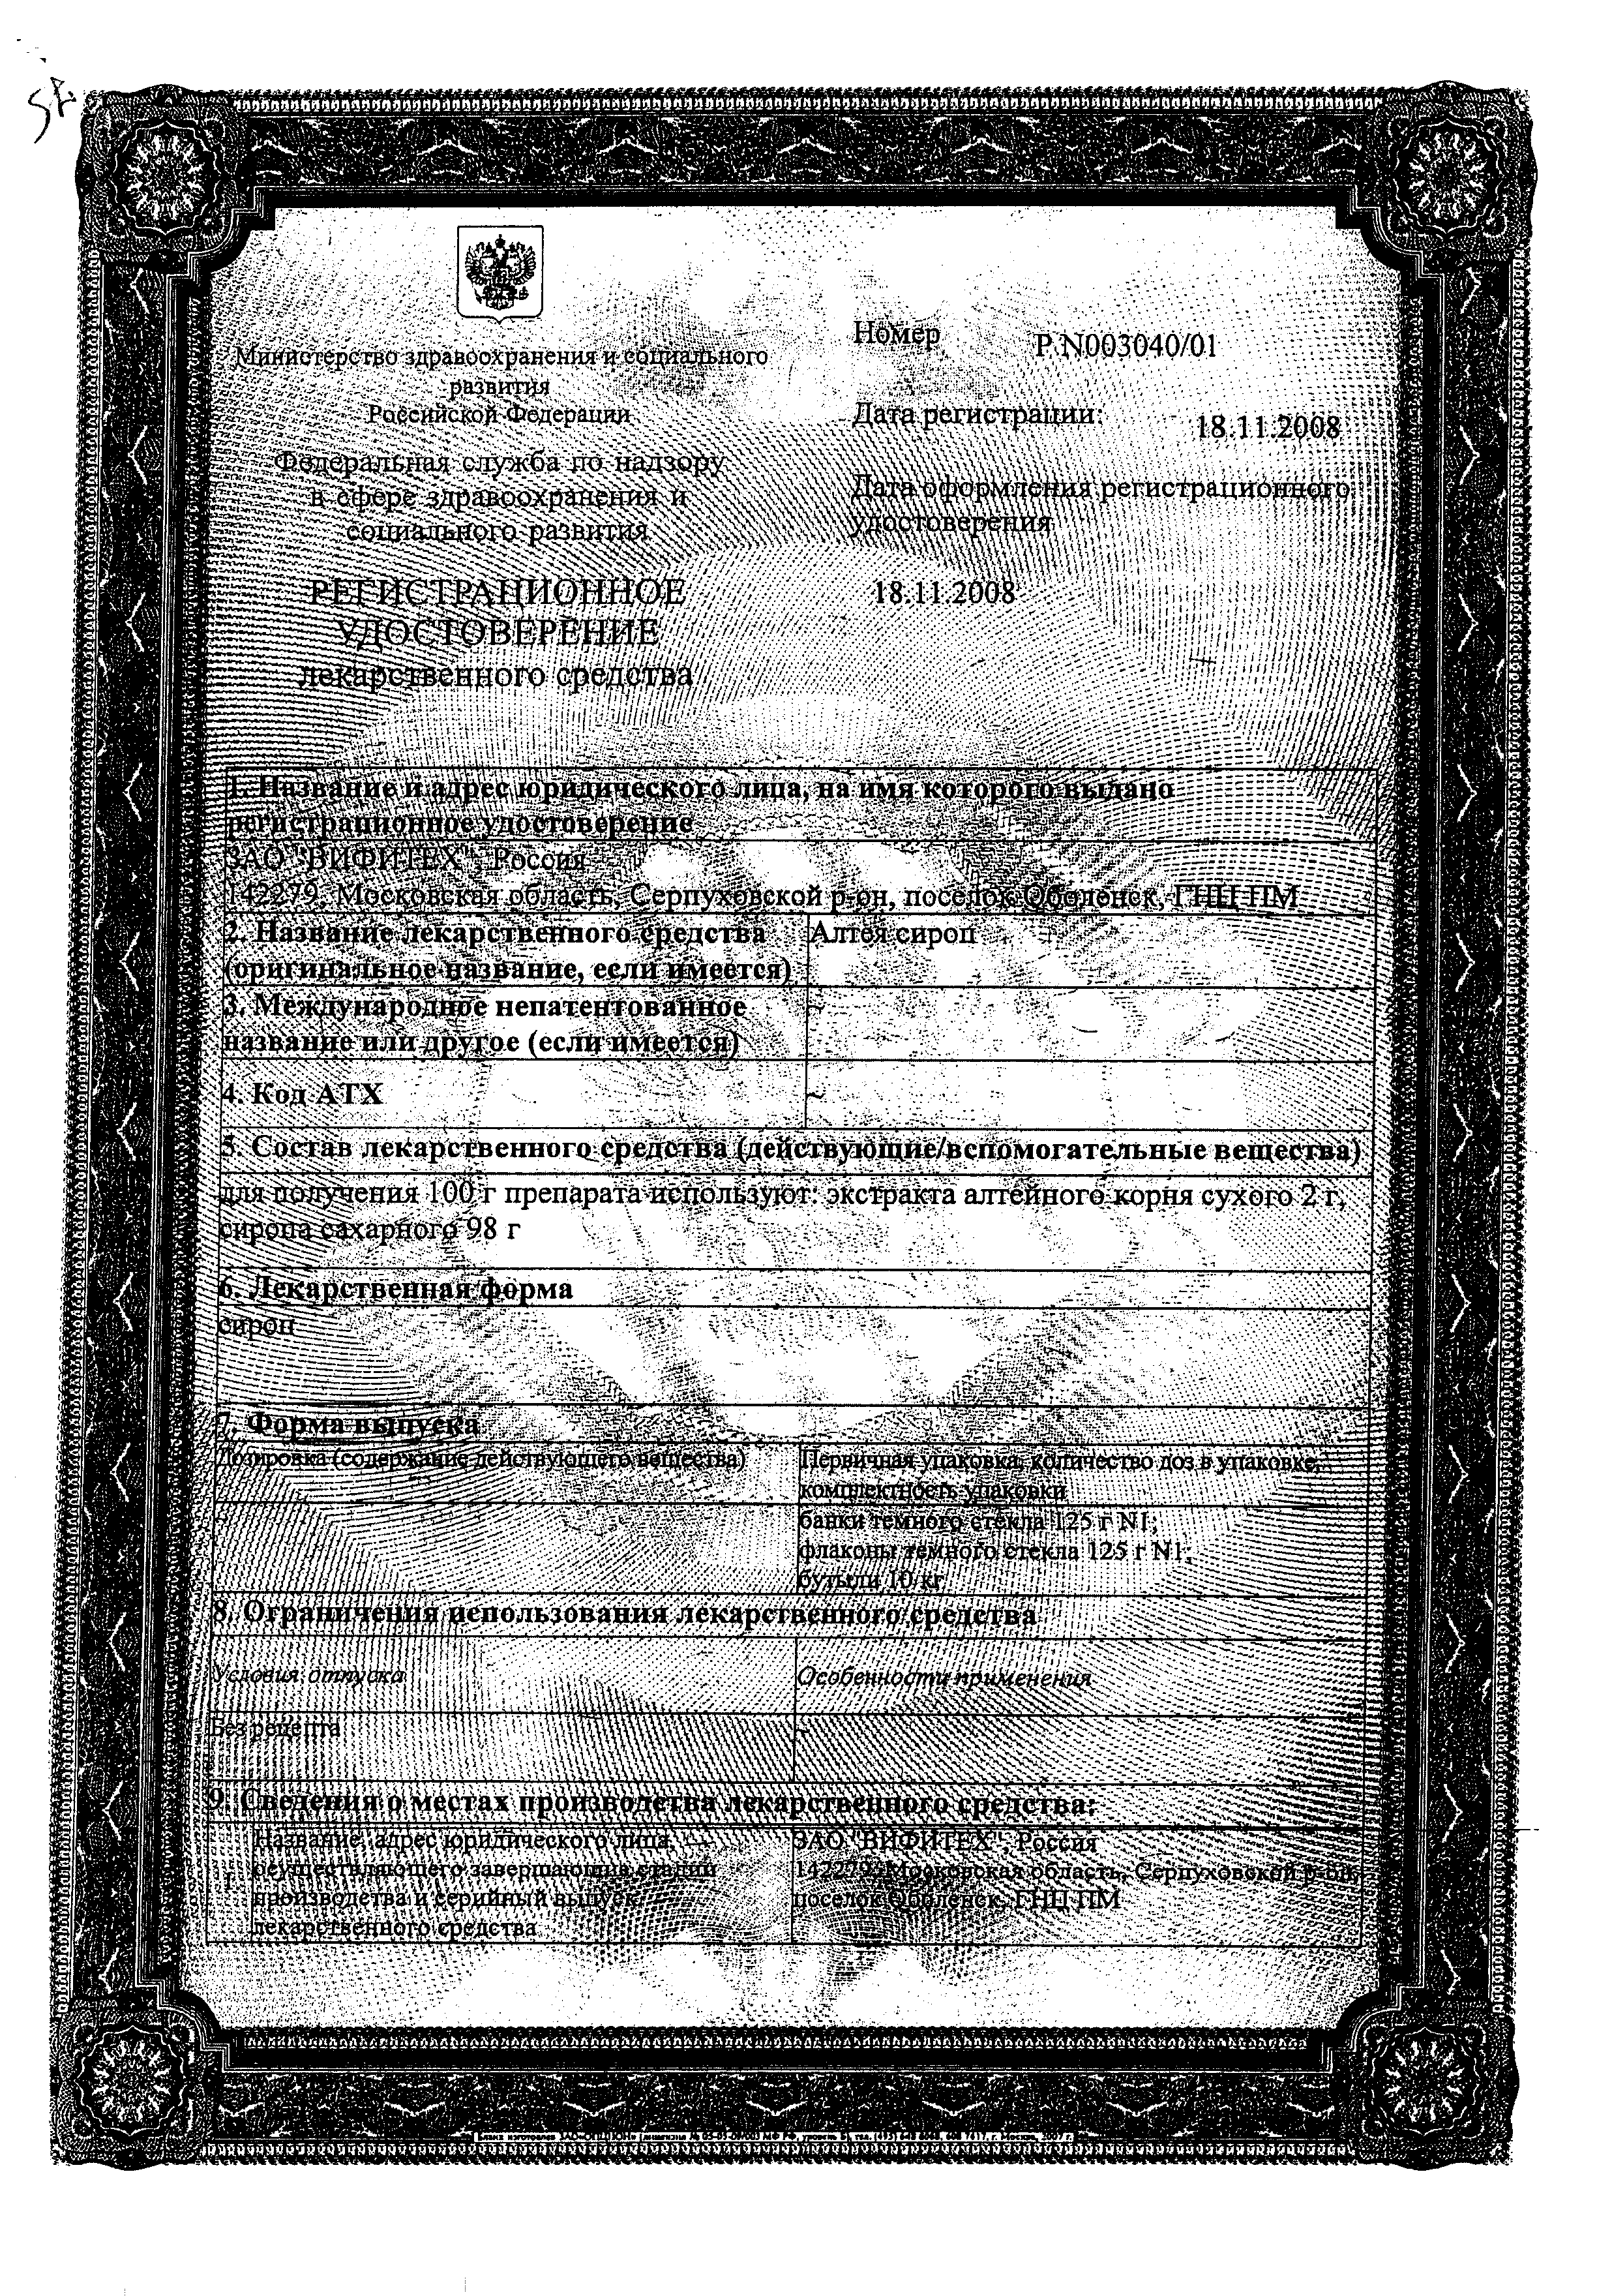 Алтея сироп сертификат